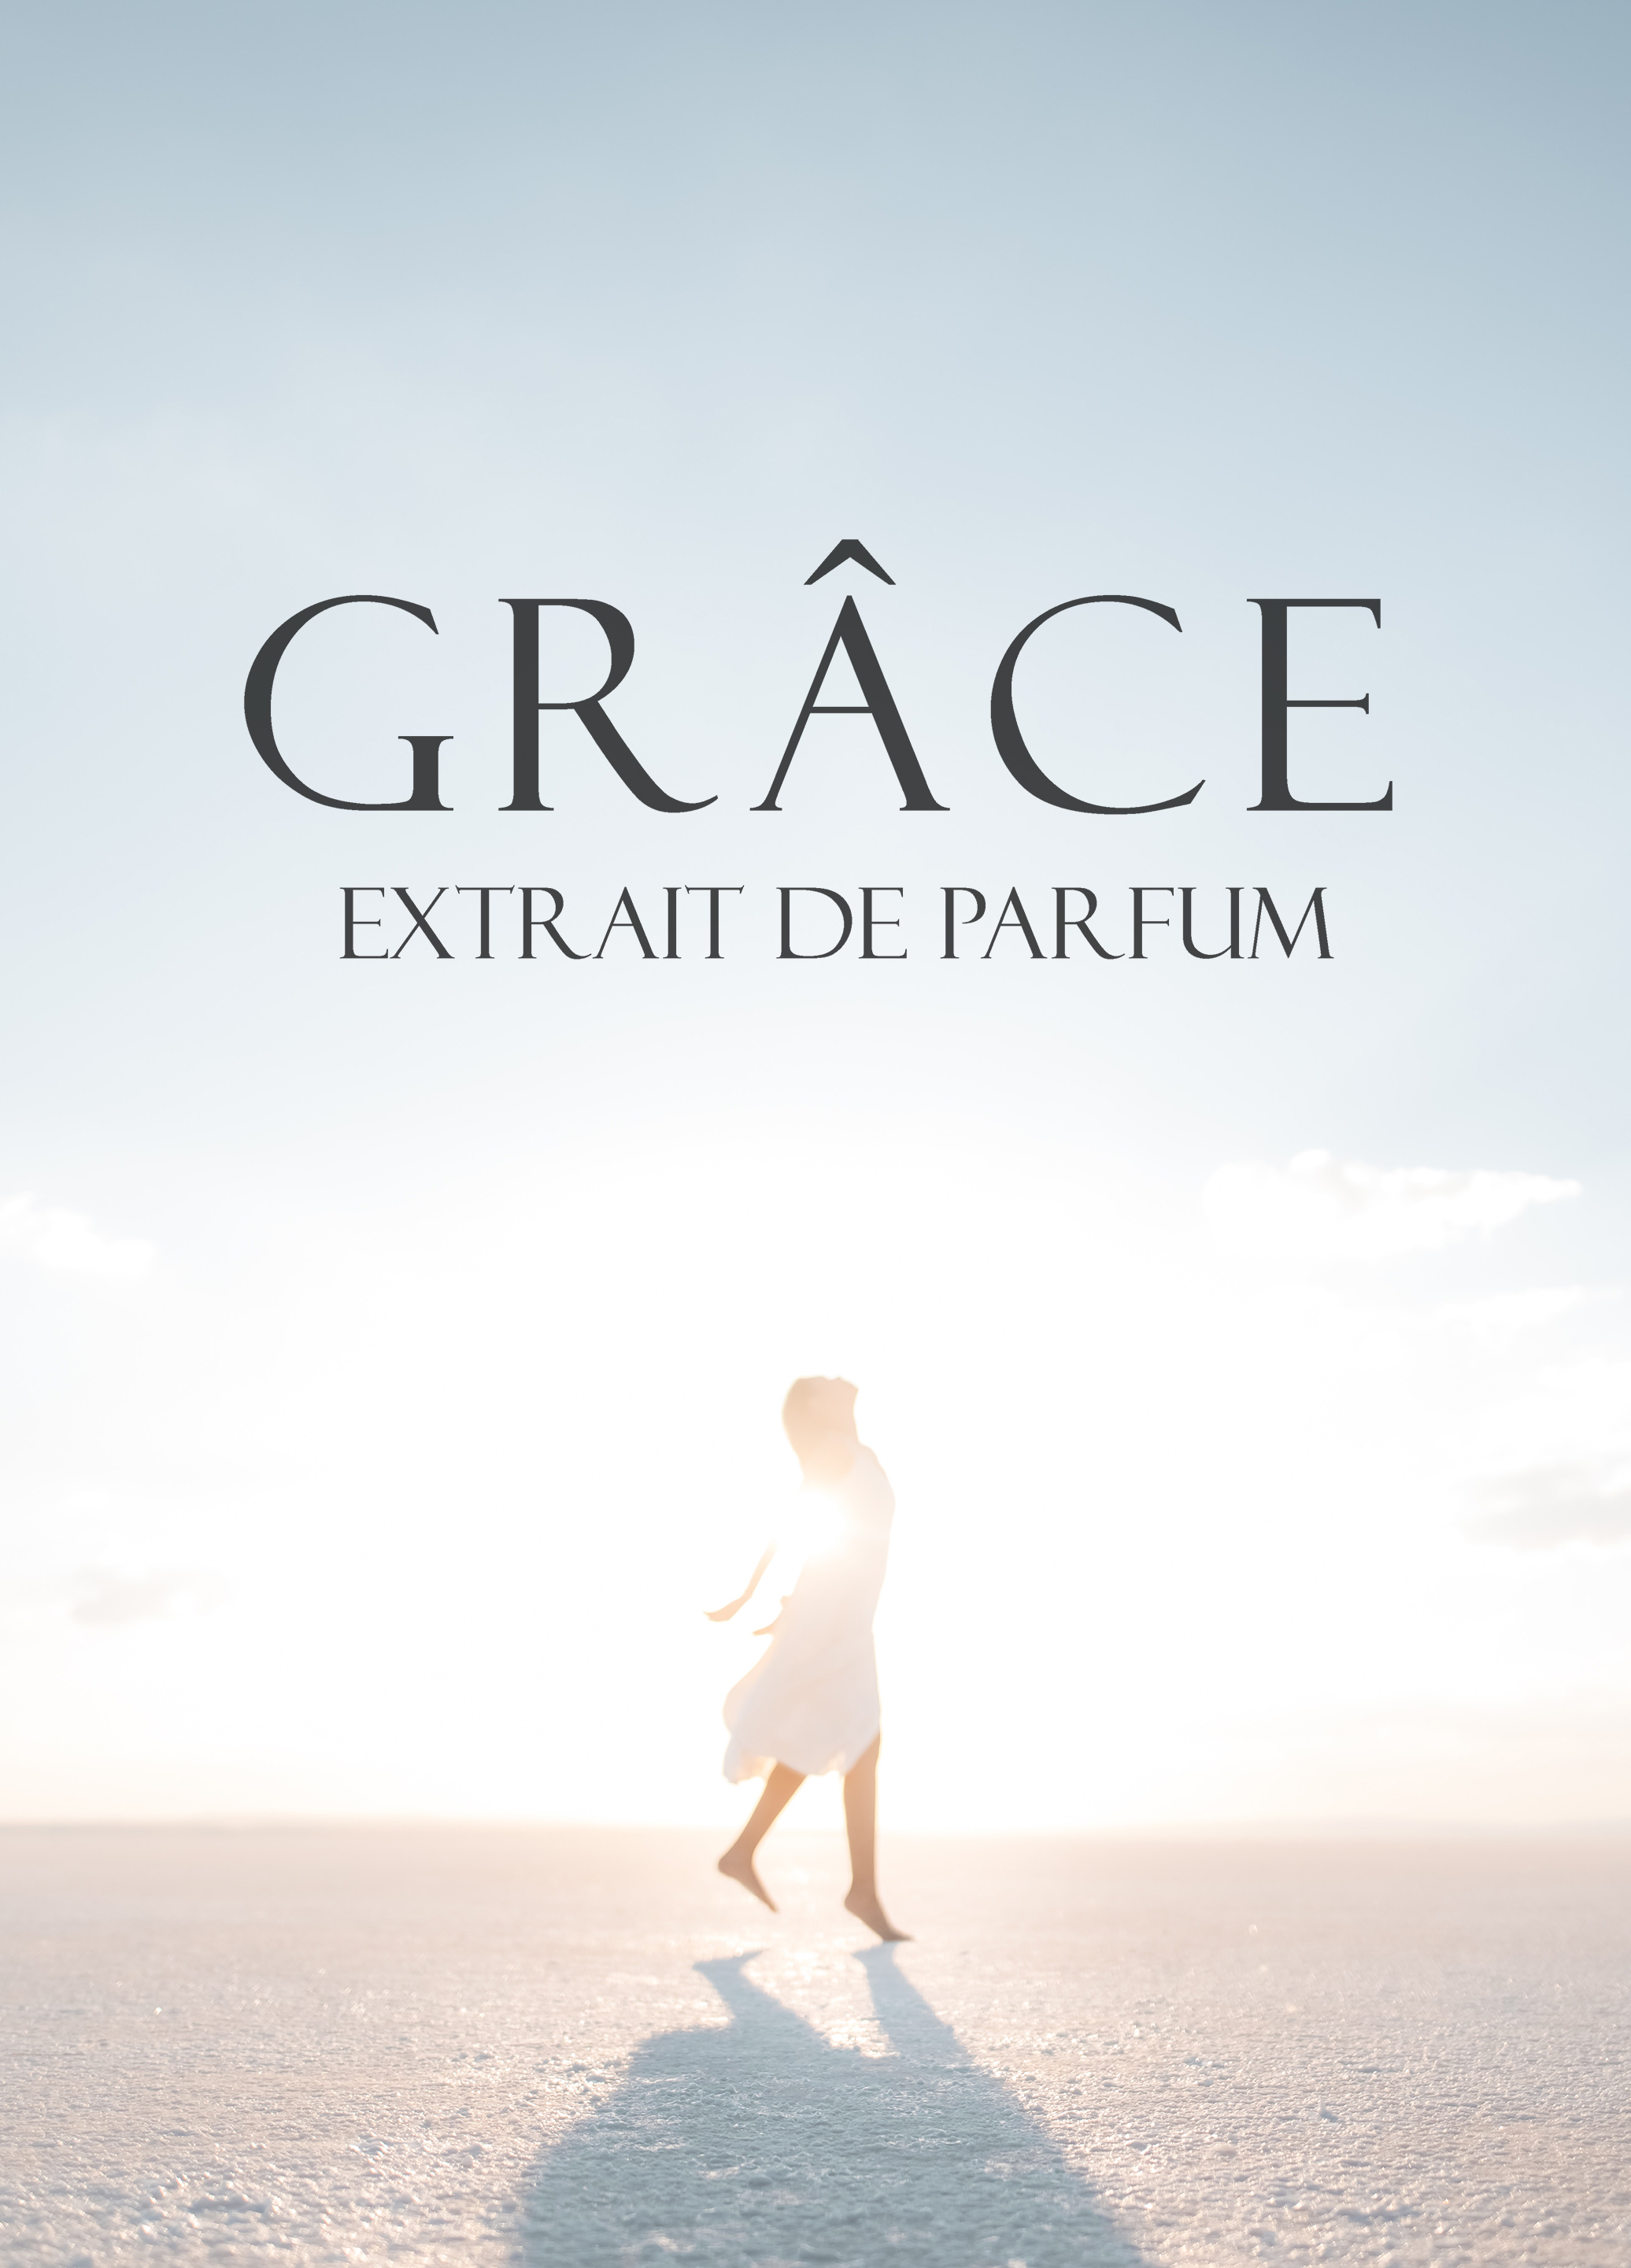 Grace EXP Mobile1.jpg